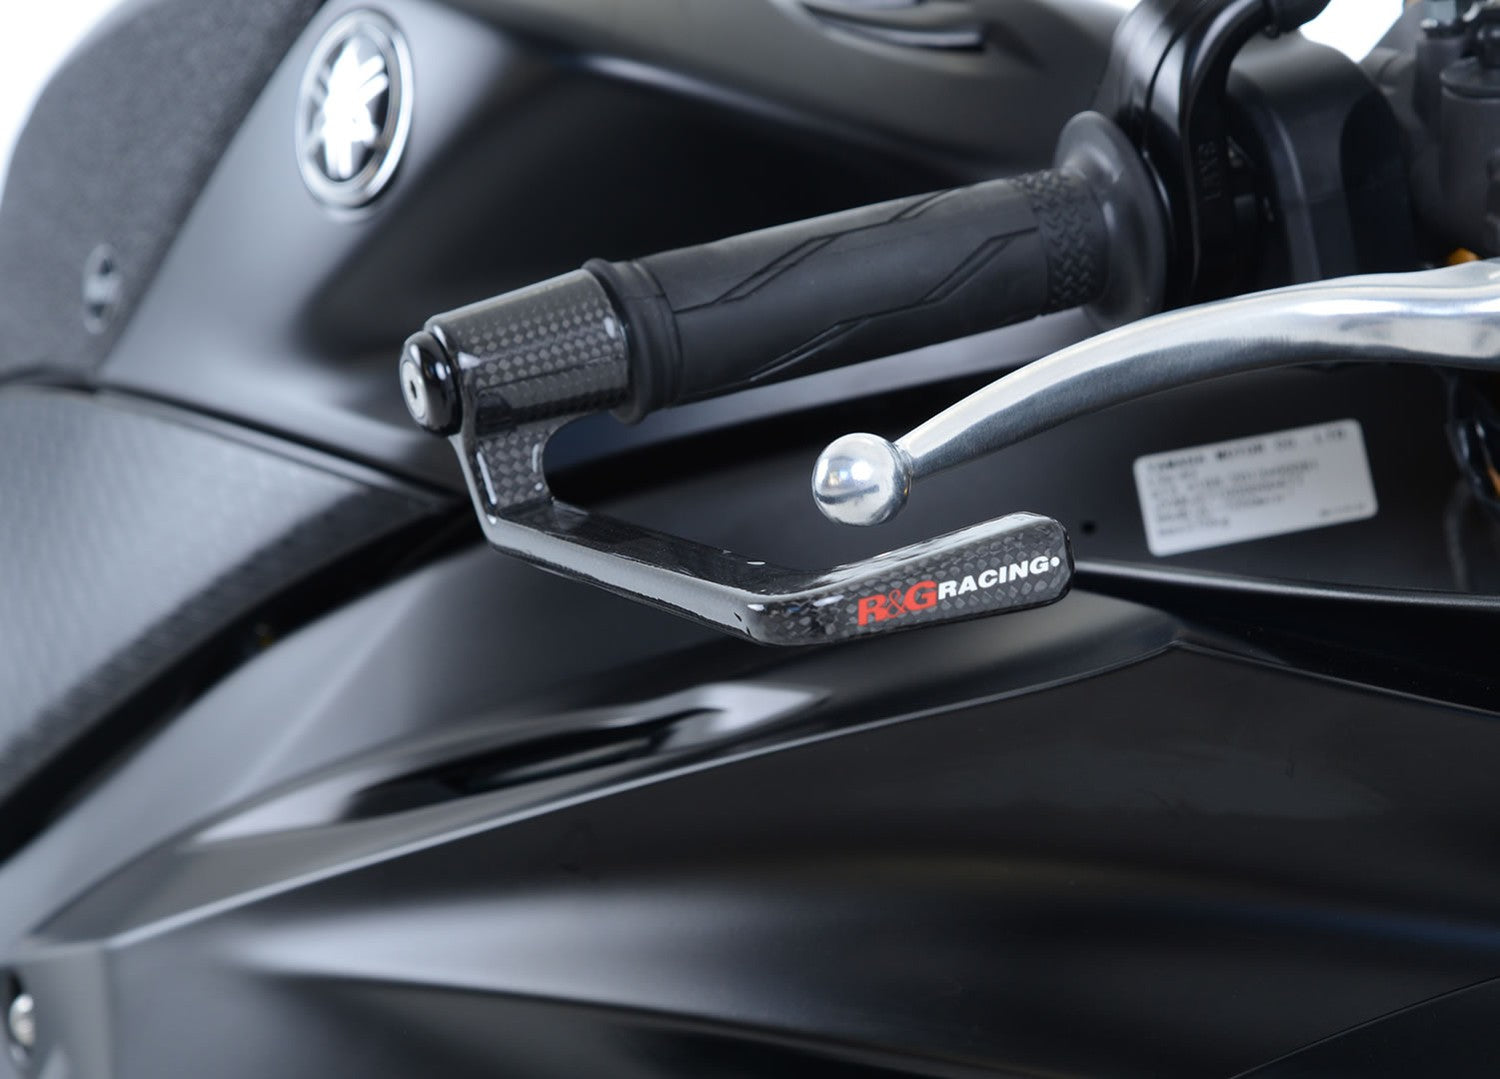 R&G Carbon Fibre Lever Guard for Yamaha R6